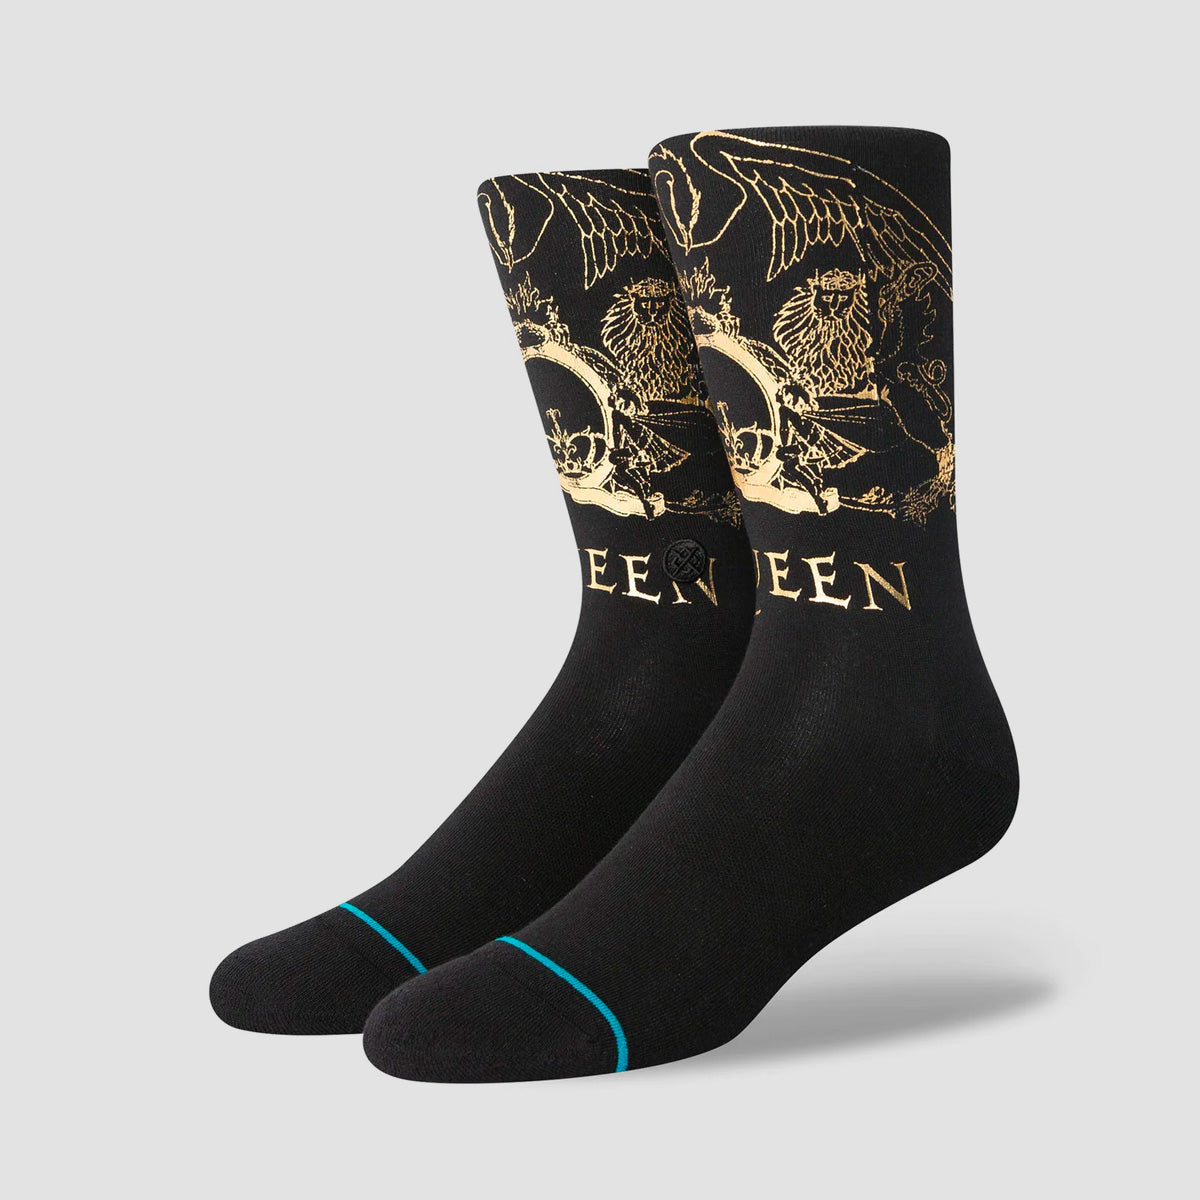 Stance X Queen Golden Crew Socks Black